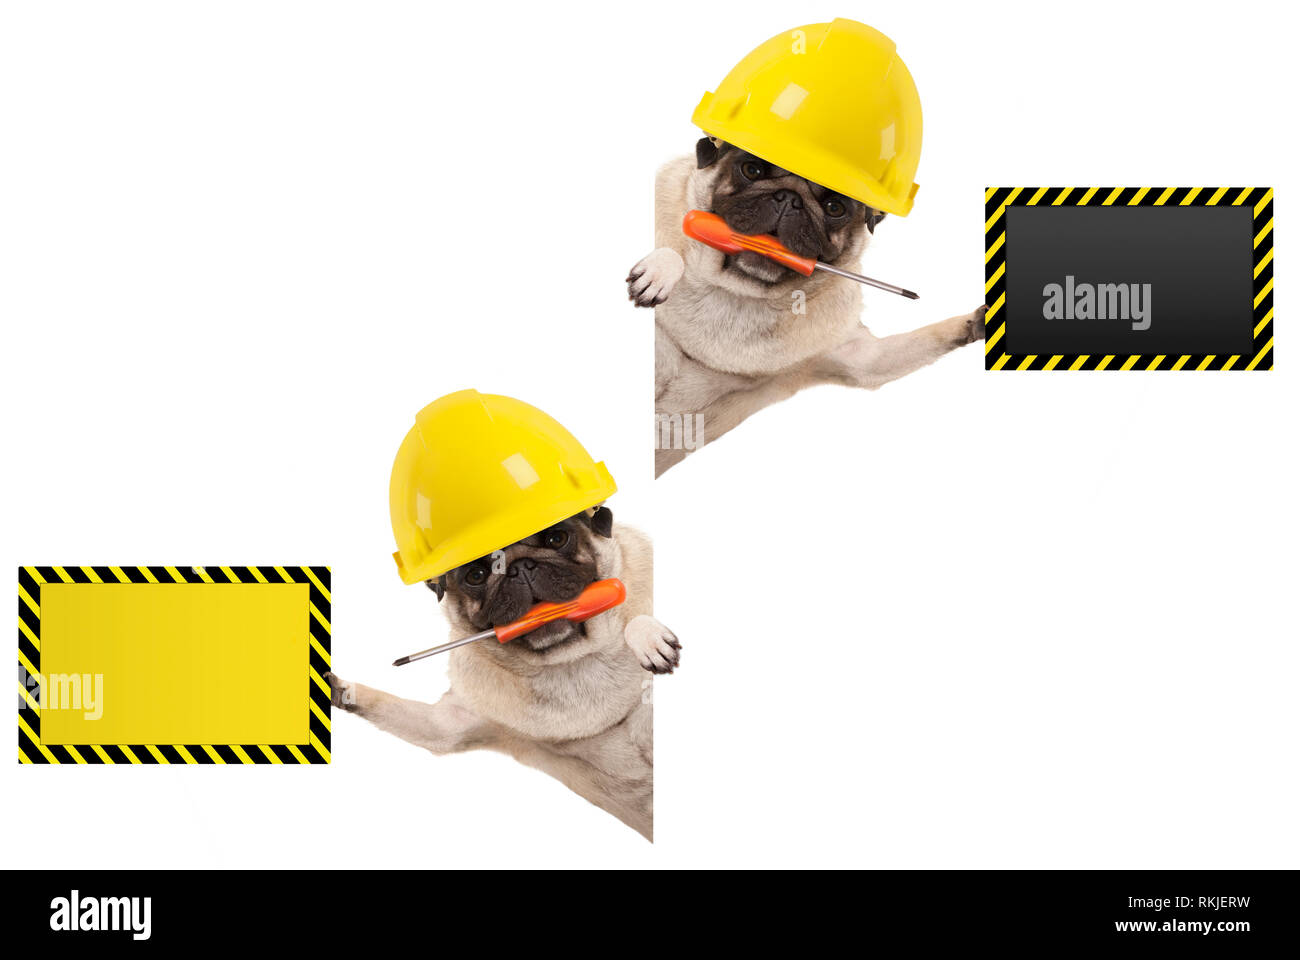 Mechaniker Bauarbeiter mops Hund mit konstruktor Helm Frolic, Holding  orange Schraubendreher und Leere gelbe und schwarze Schild, auf der whi  isoliert Stockfotografie - Alamy